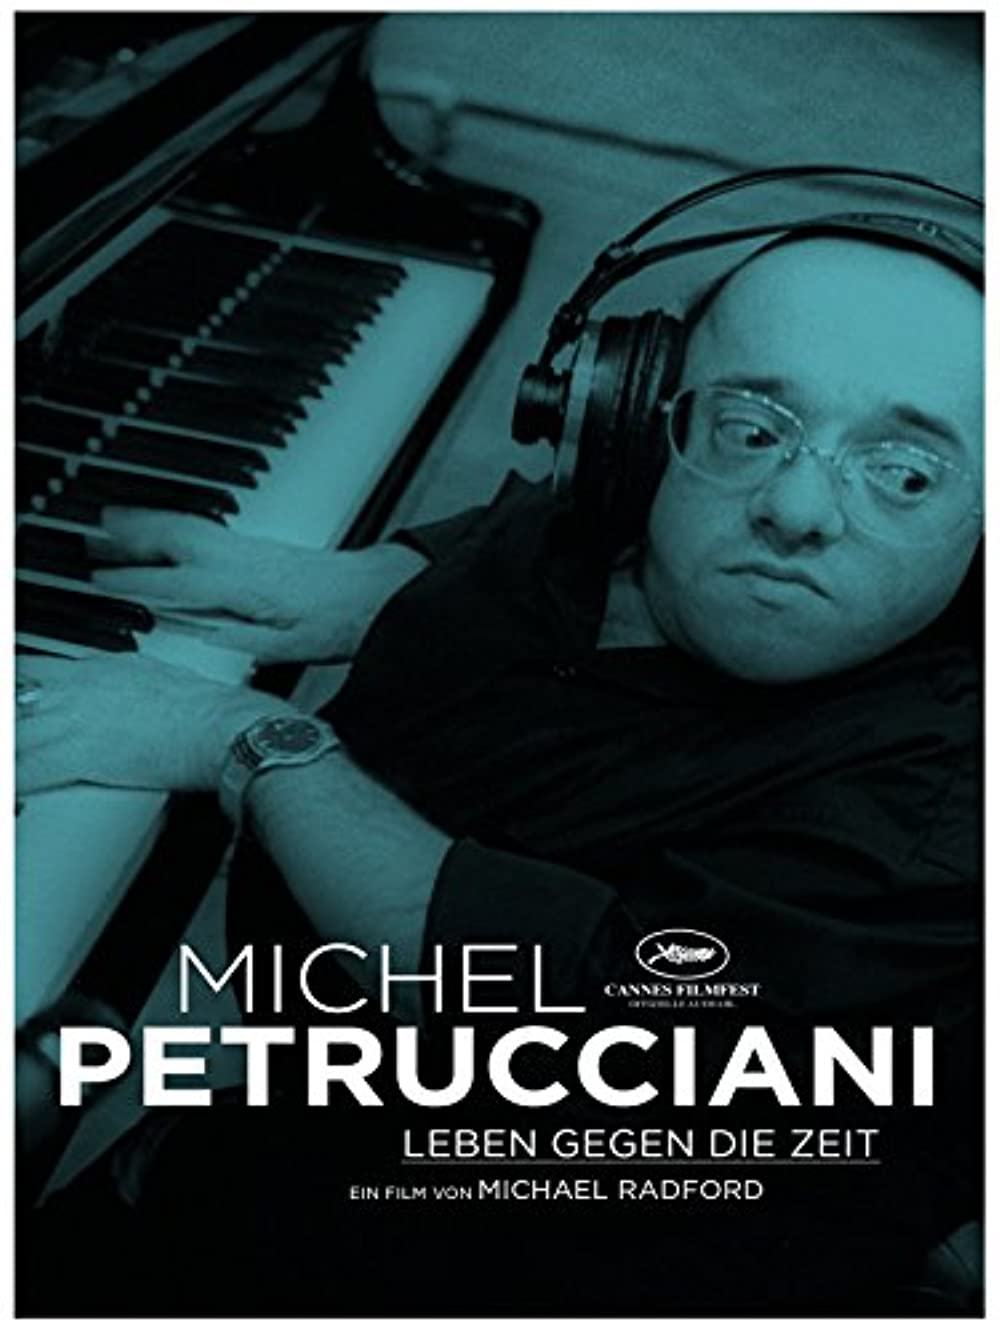 Filmbeschreibung zu Michel Petrucciani - Leben gegen die Zeit